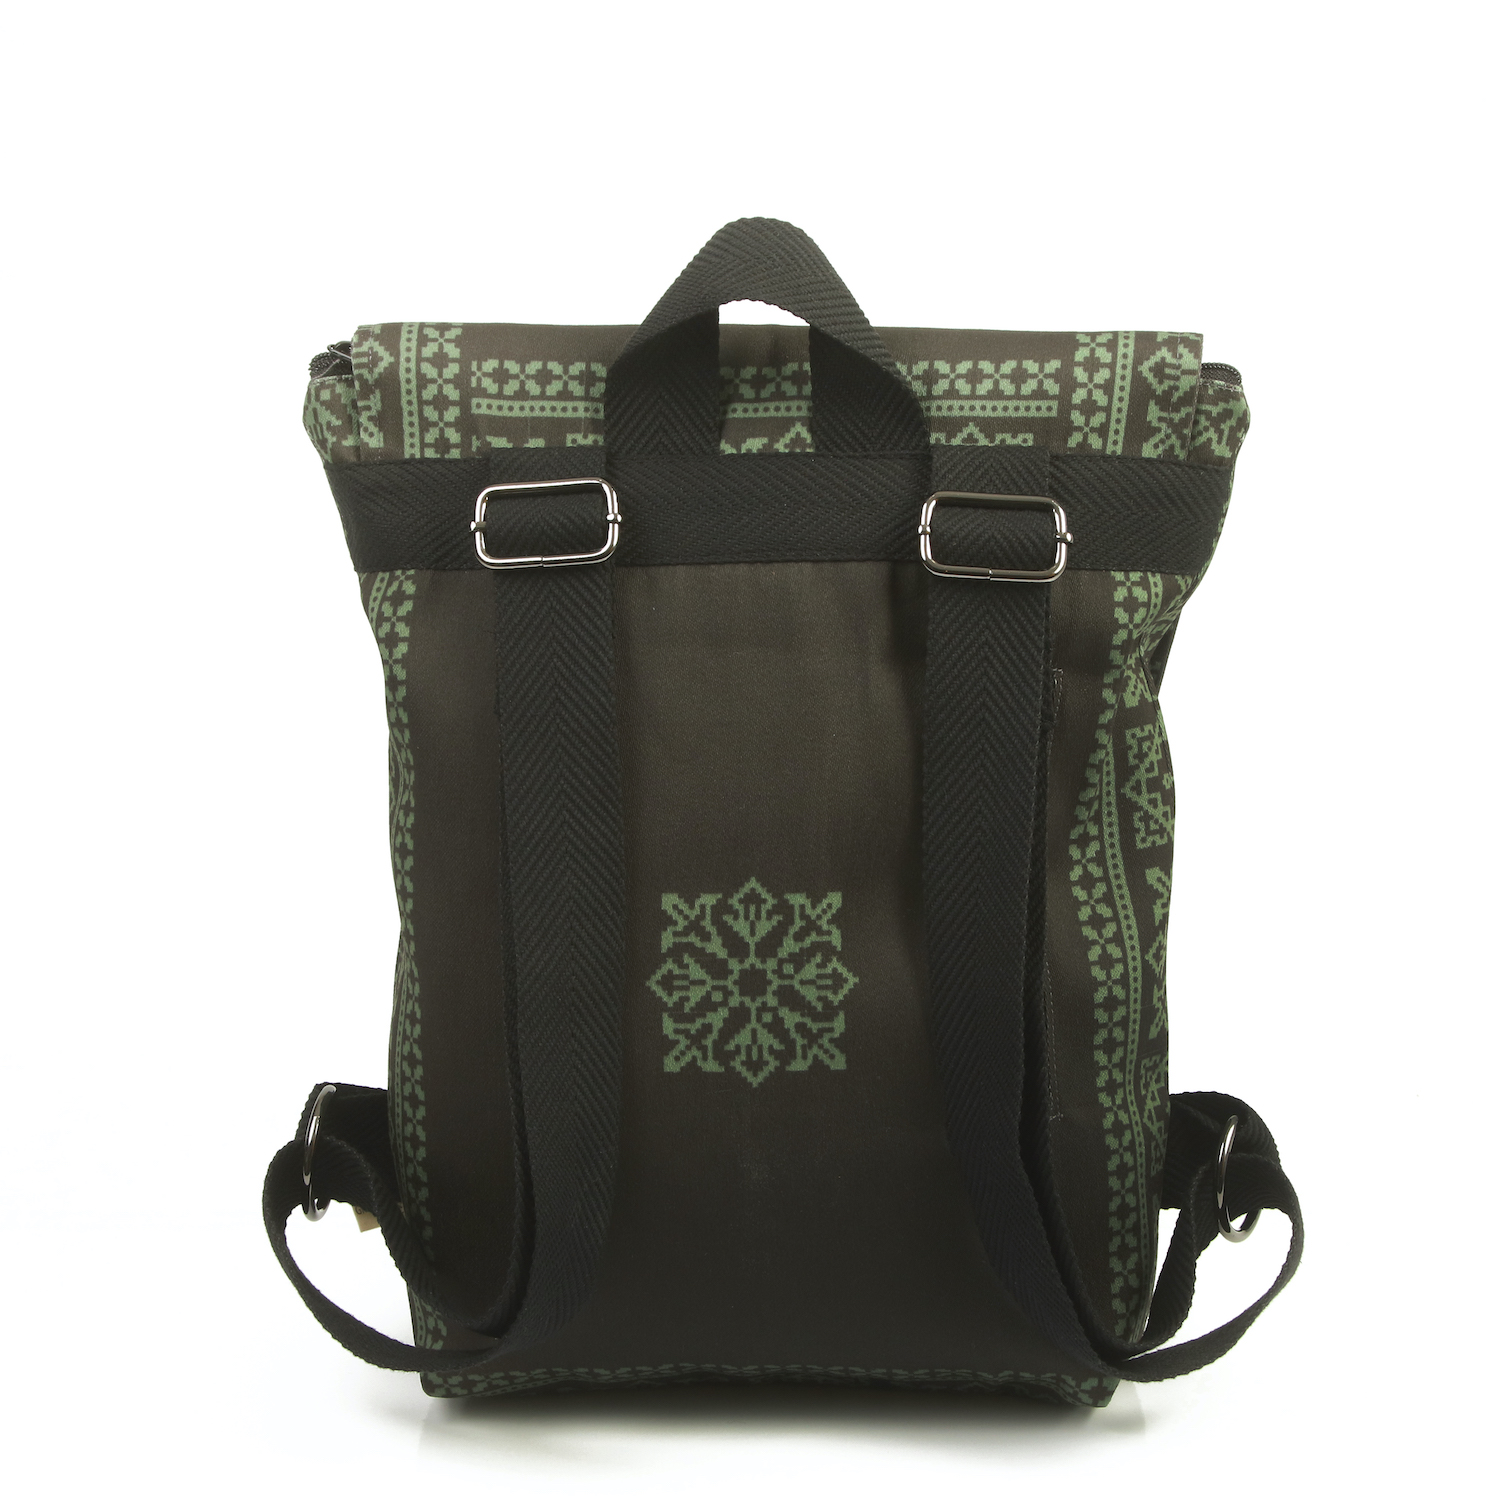 LazyDayz Designs Backpack γυναικείος σάκος πλάτης χειροποίητος bb0707c